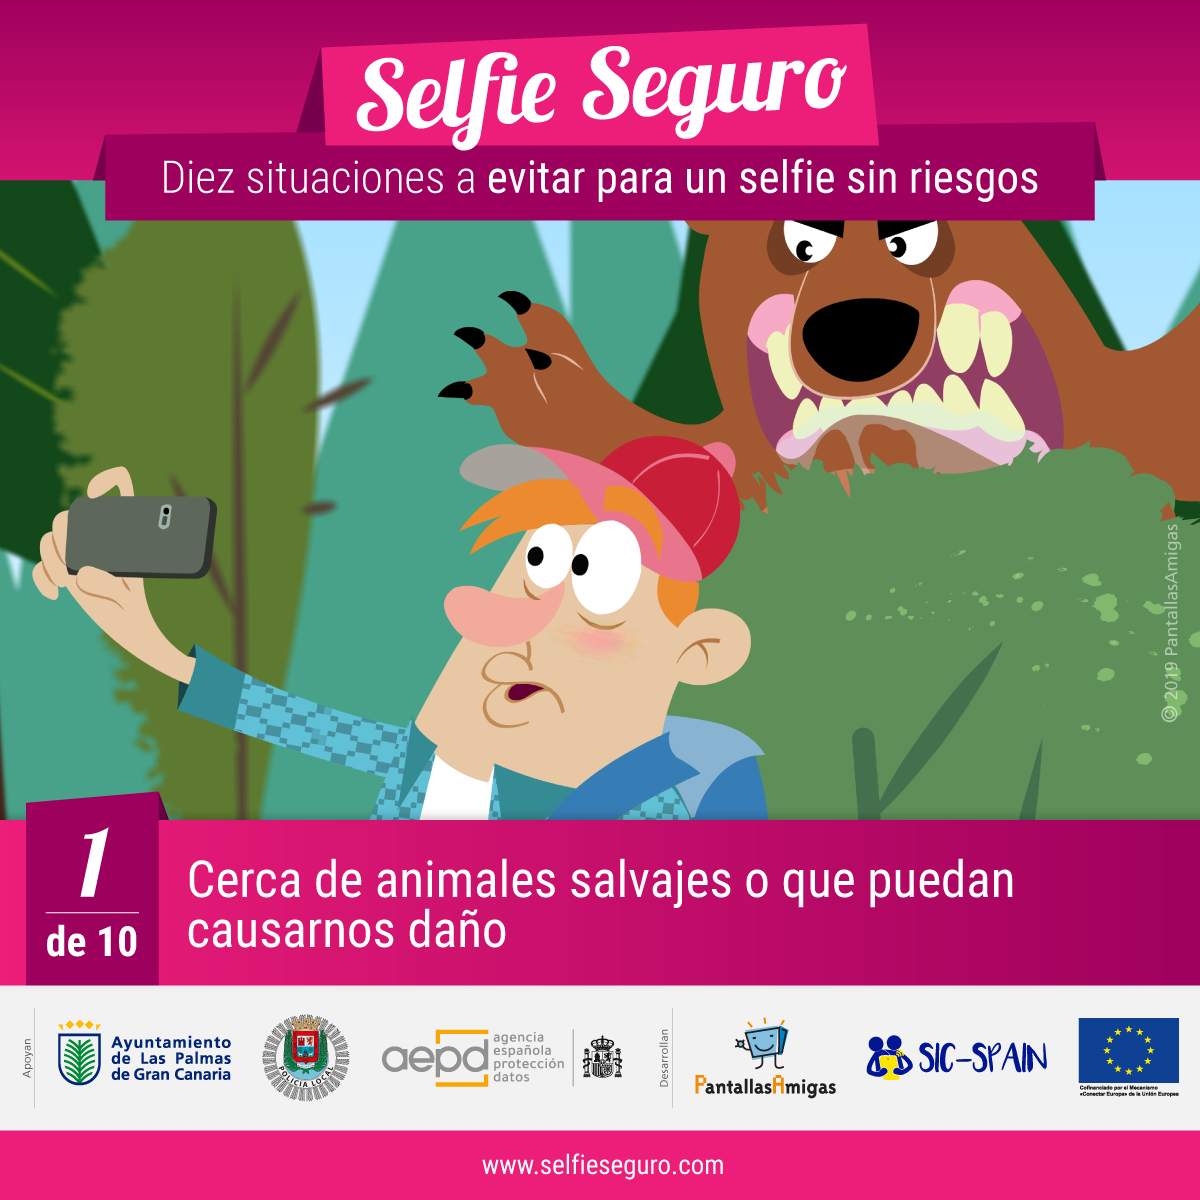 Evitar selfies cerca de animales salvajes o que puedan causarnos daño